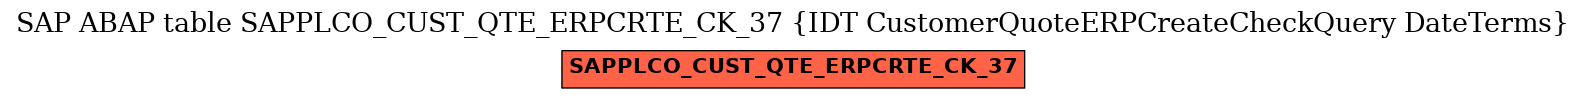 E-R Diagram for table SAPPLCO_CUST_QTE_ERPCRTE_CK_37 (IDT CustomerQuoteERPCreateCheckQuery DateTerms)